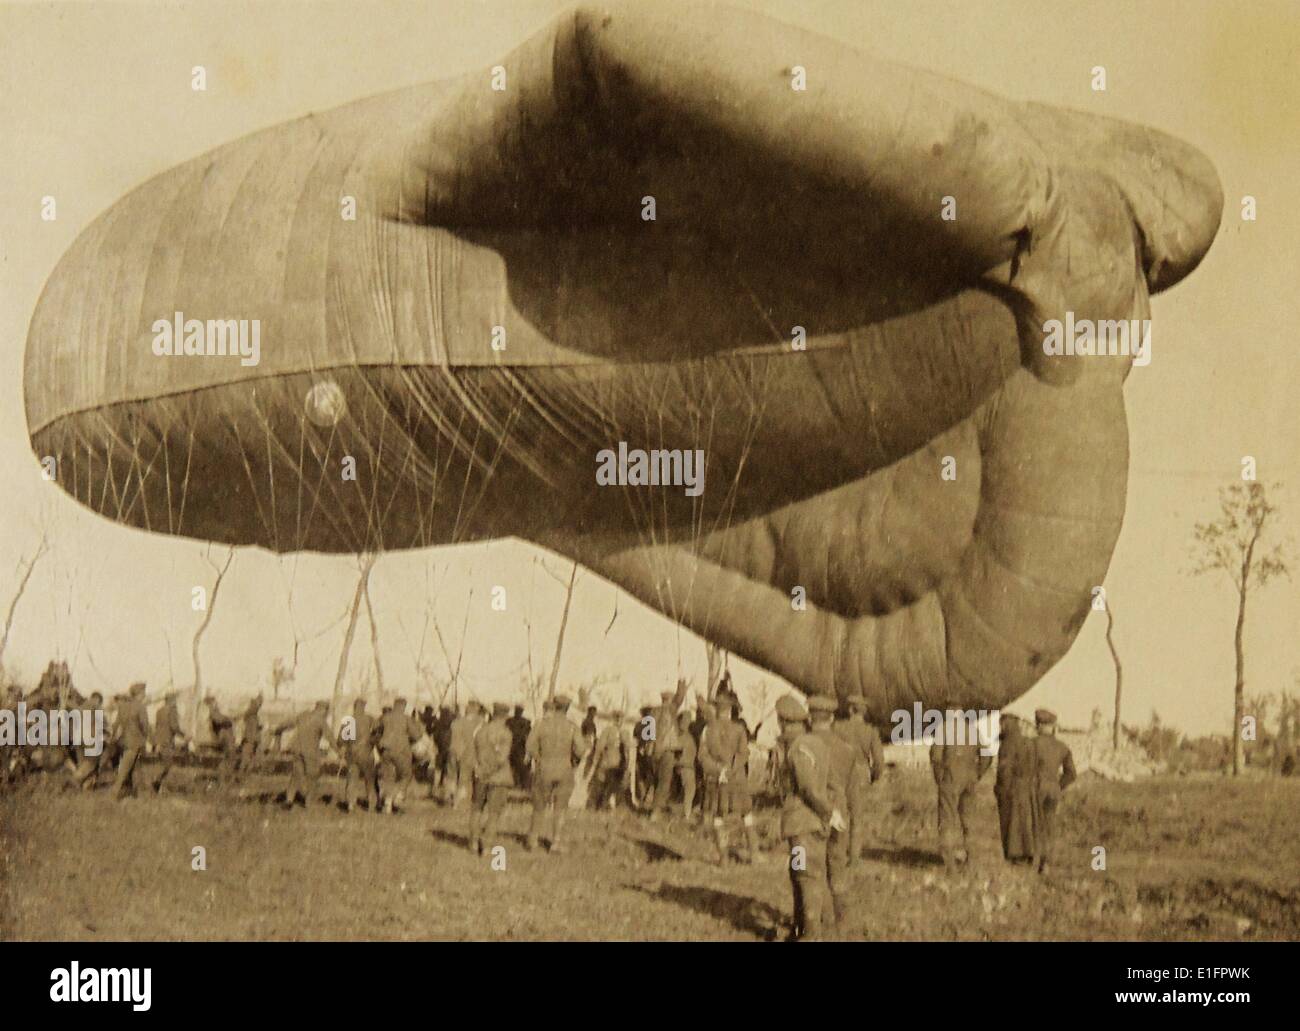 Fotografia di un'osservazione palloncino sgonfio. Riempito di gas e palloncini erano usati per tutta la durata della guerra per le osservazioni. Datata 1918 Foto Stock